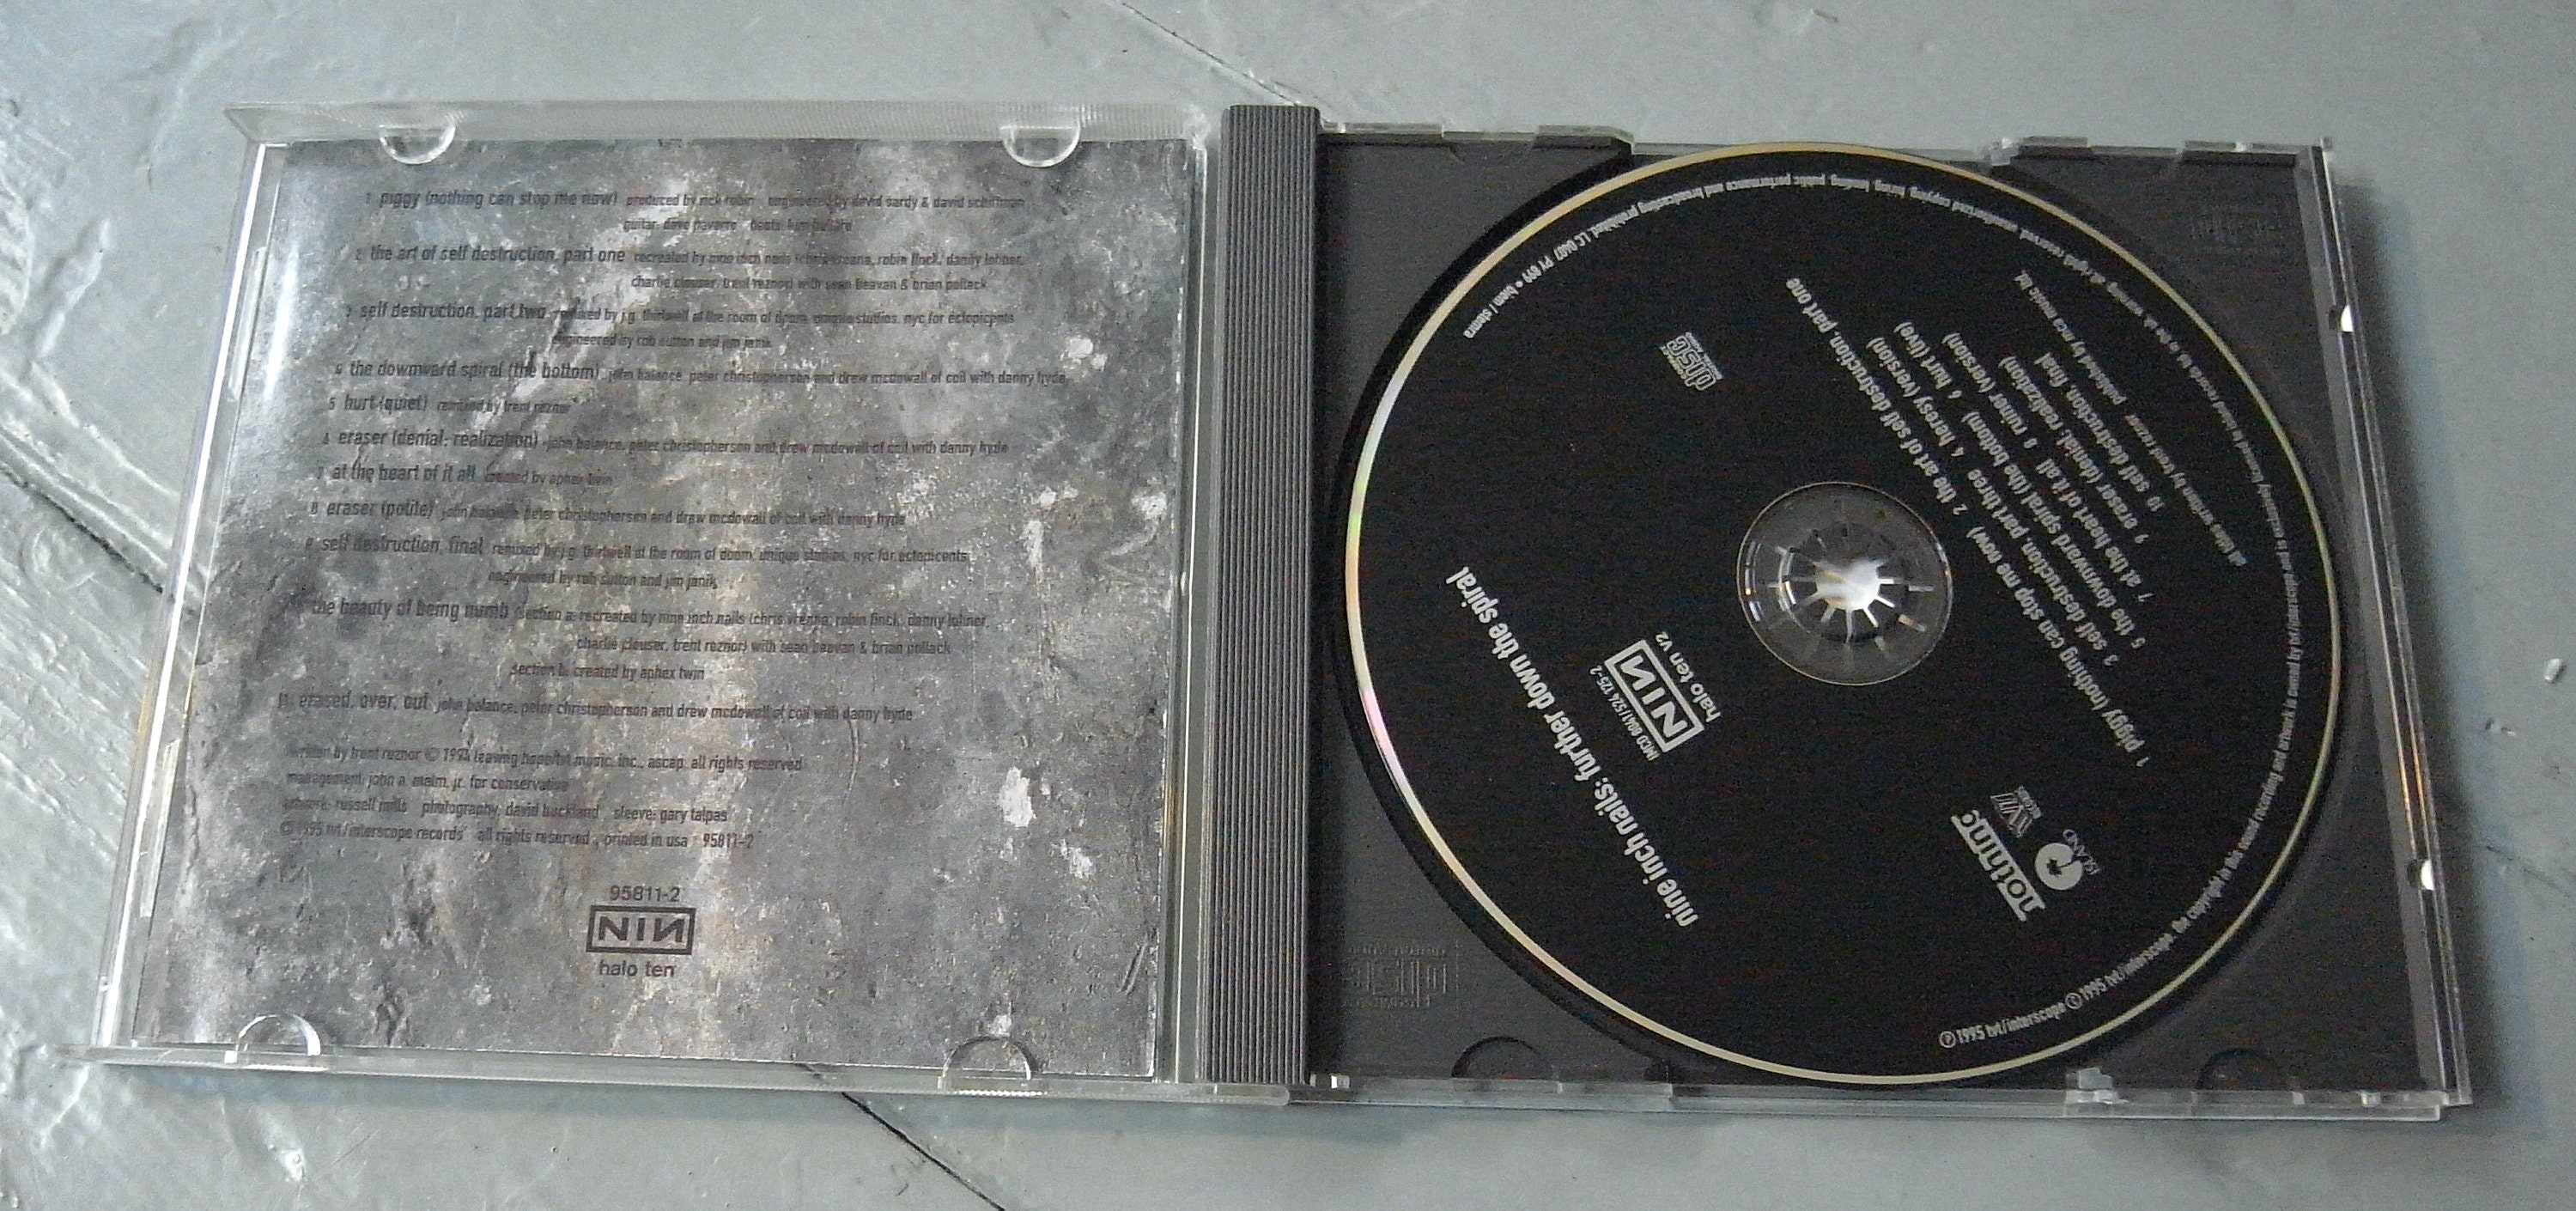 Rare Nine inch nails - the downward spiral cd... - Depop